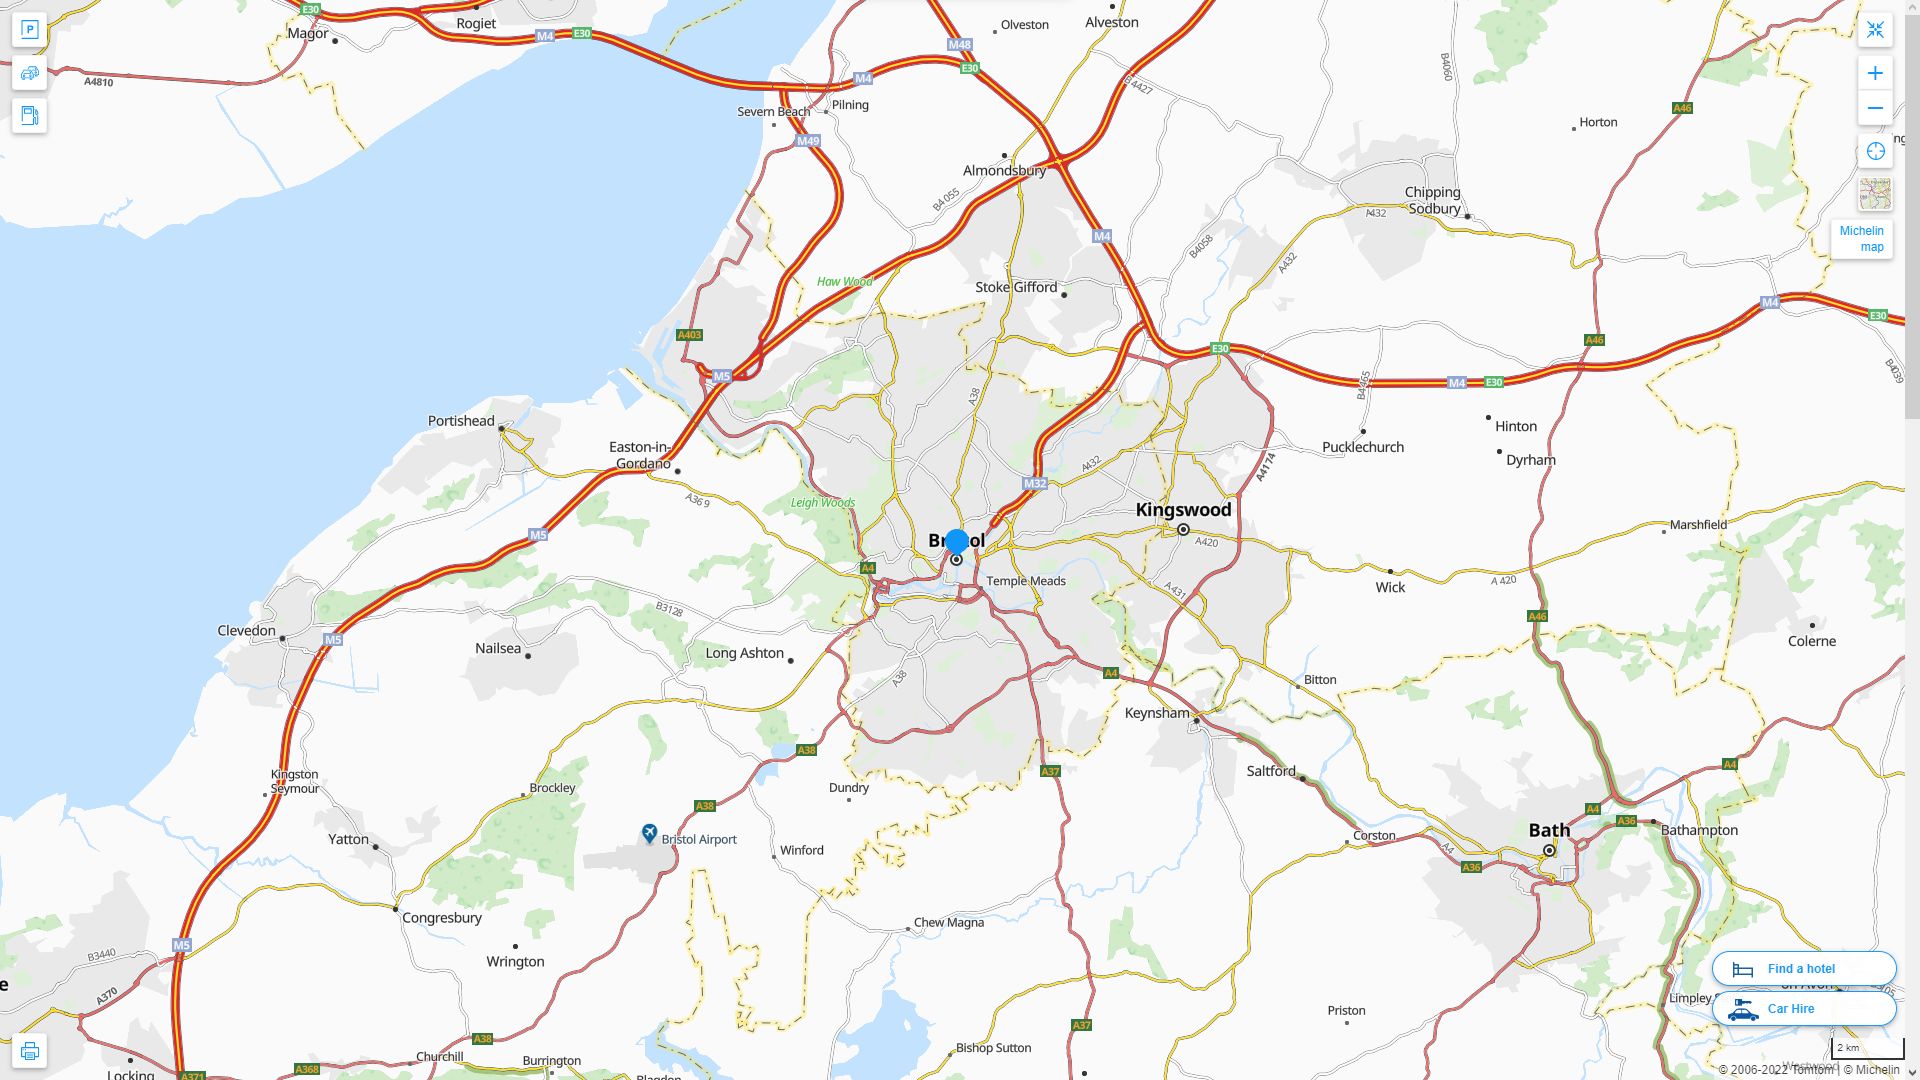 Bristol Royaume Uni Autoroute et carte routiere